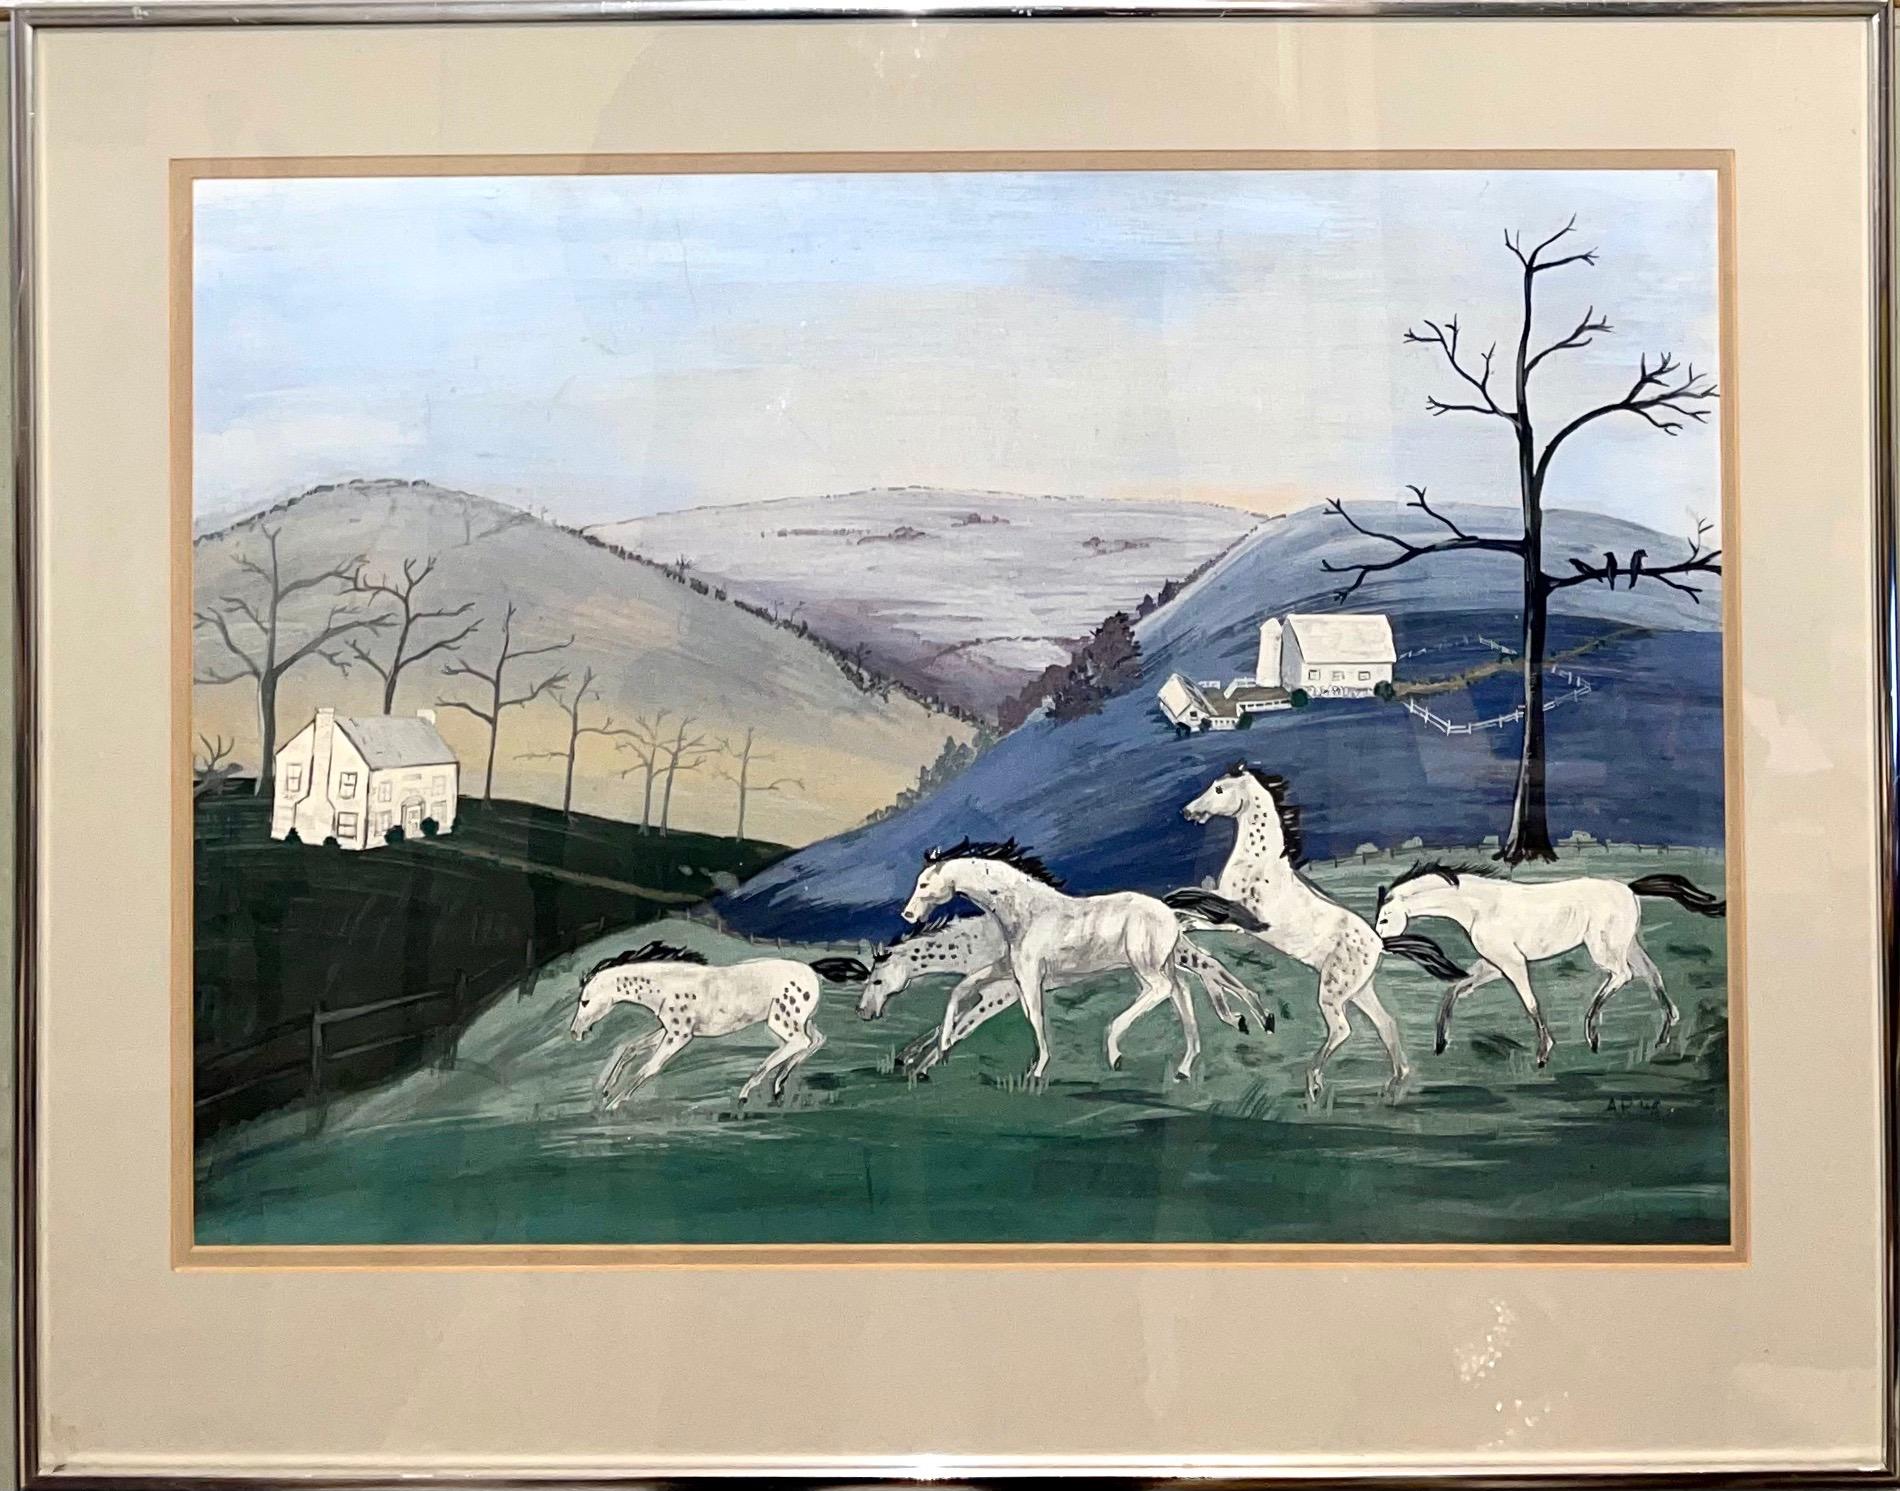 1948 amerikanische Volkskunst Aquarell, Gouache, Malerei Pferd auf Bauernhof, Reiter auf Pferden – Painting von Cecilia 